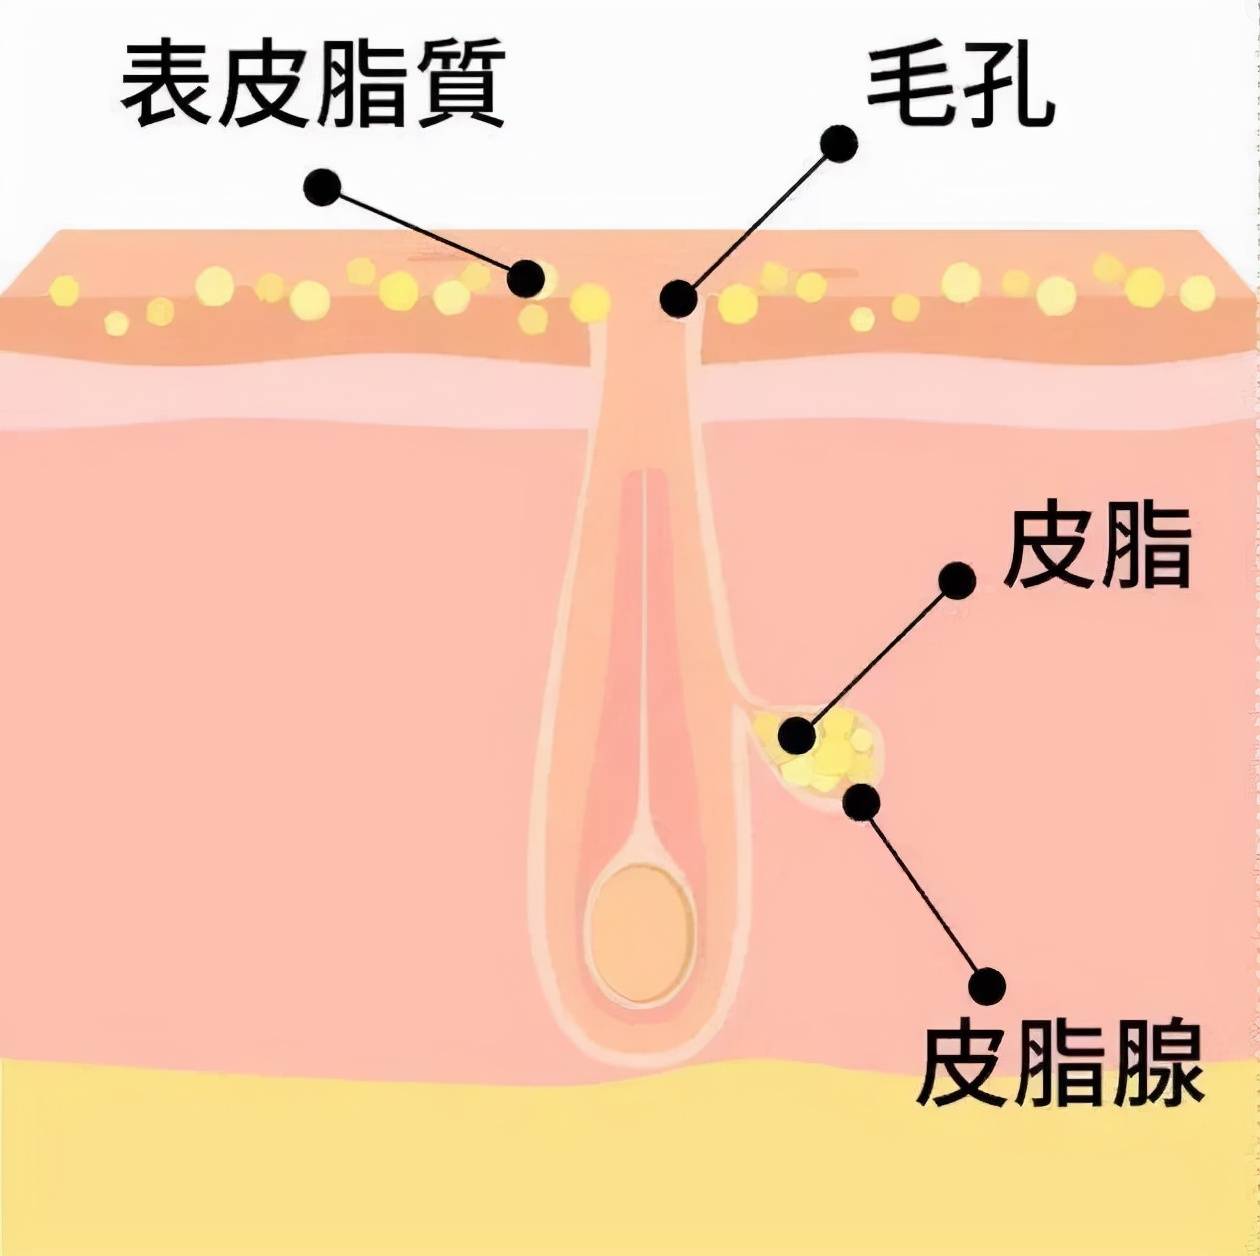 正常情况下,皮脂腺分泌出的油脂在表皮扩散,可以滋润皮肤和毛发,防止